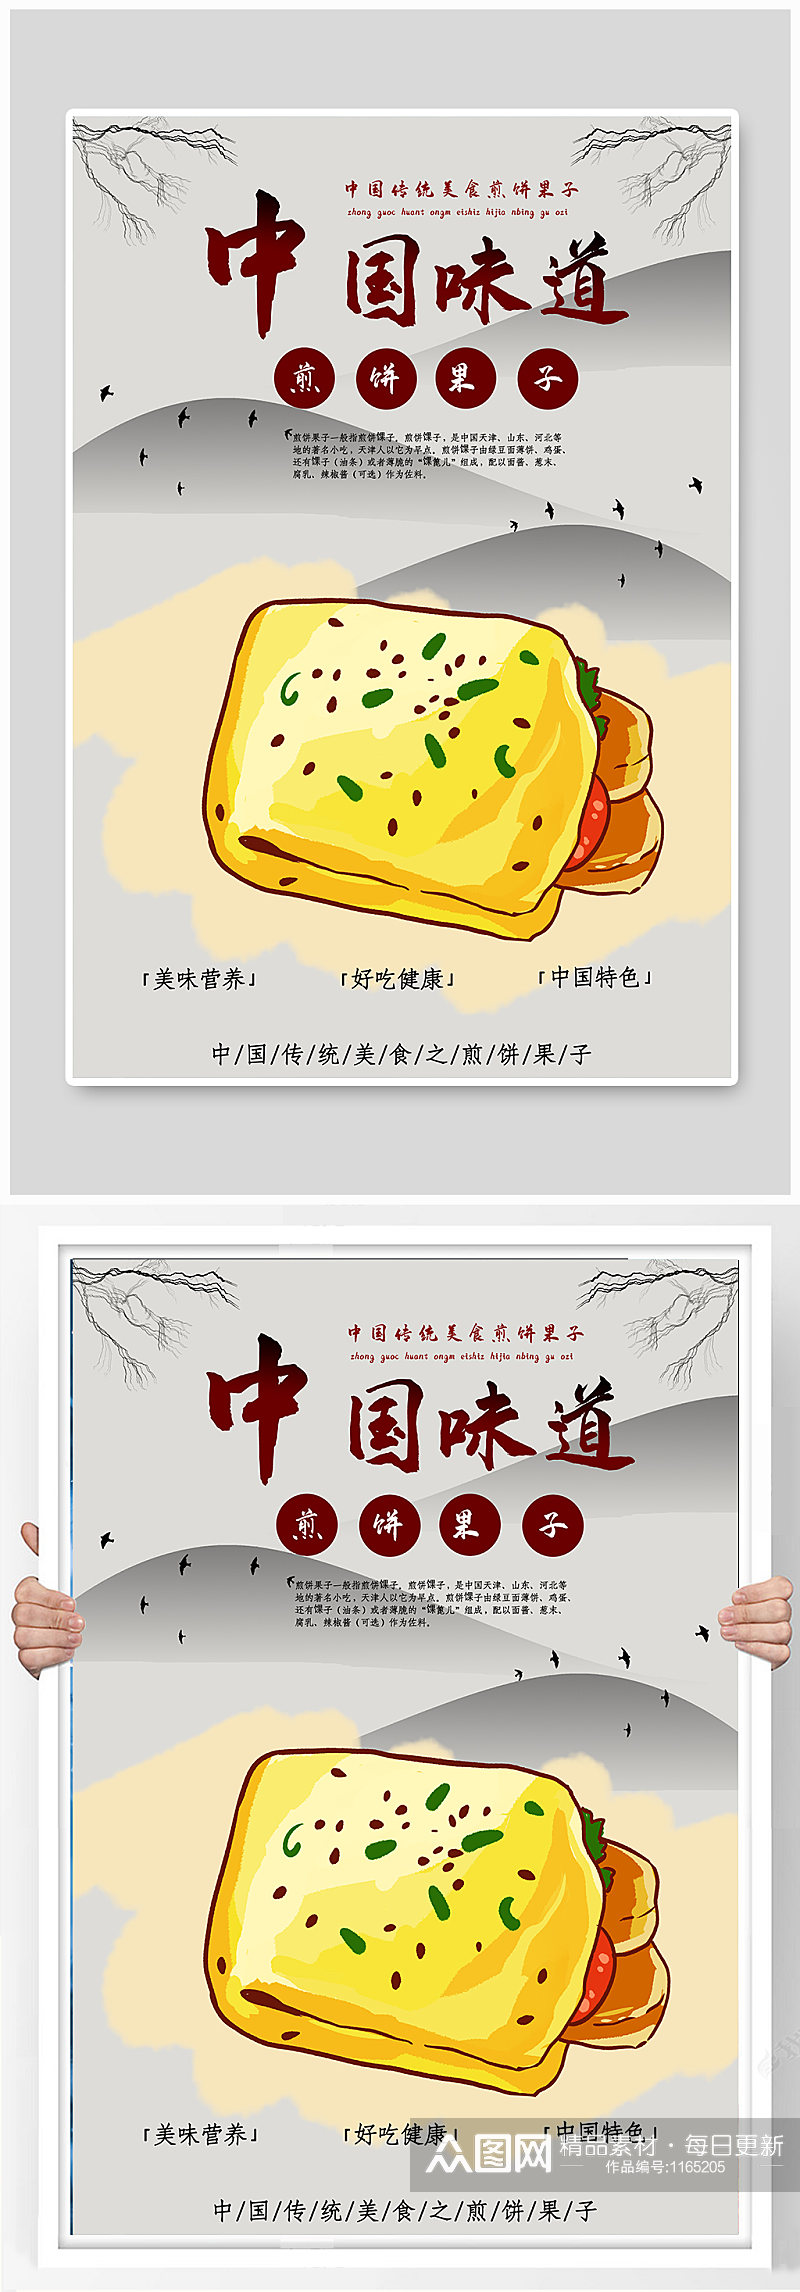 中国传统美食煎饼果子海报素材